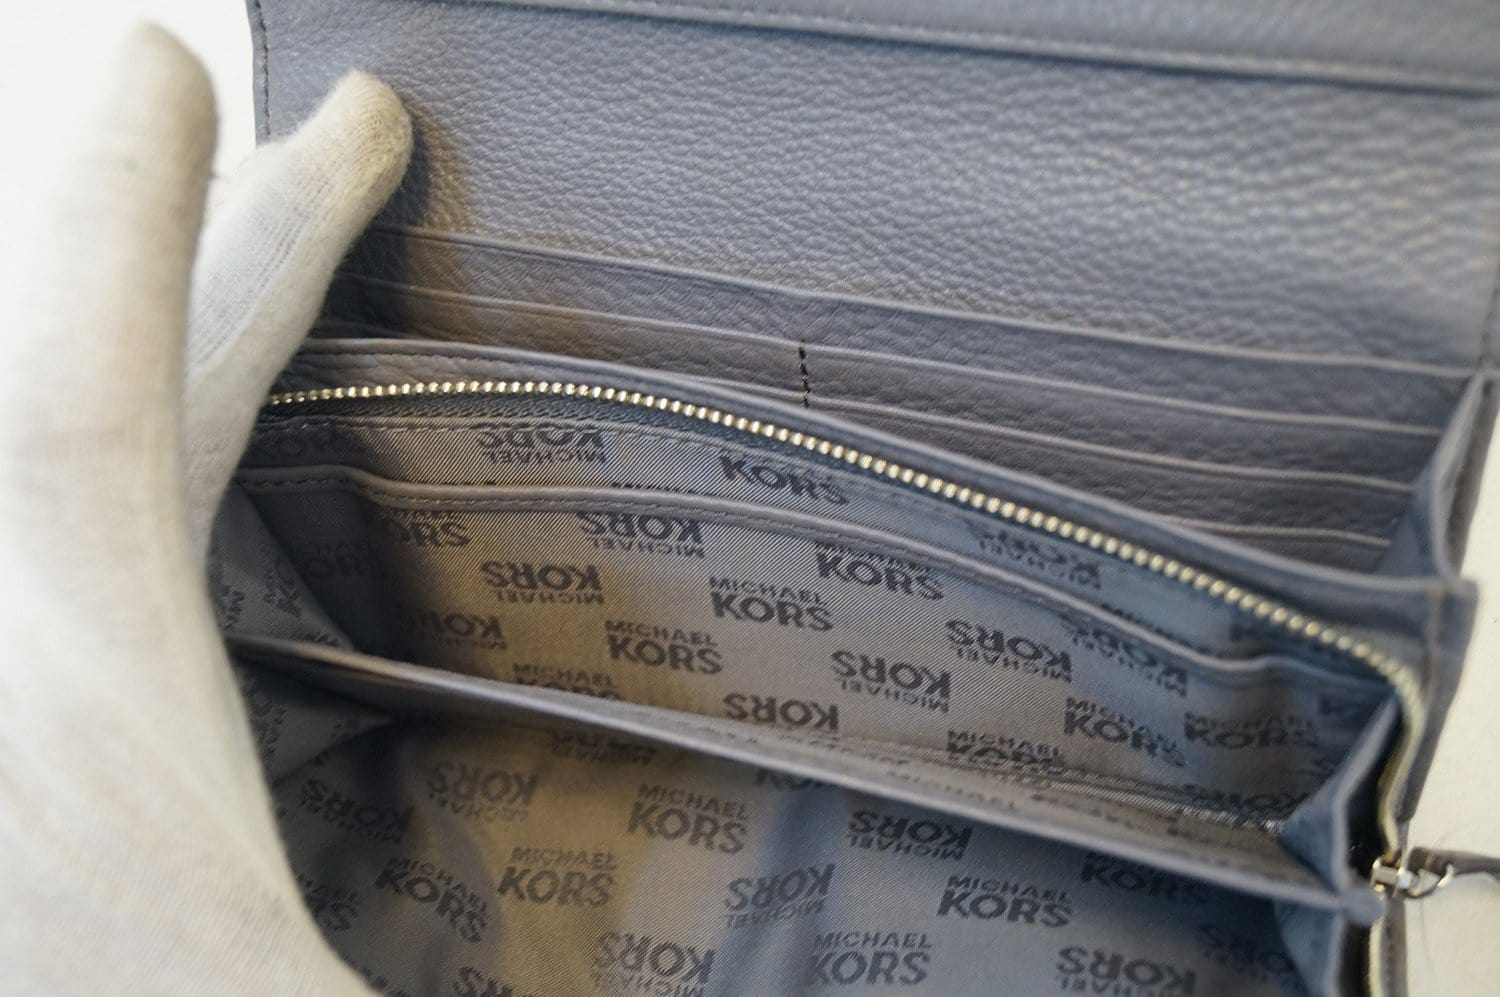 Michael Kors Wallet  Michael kors wallet, Wallet, Michael kors bag